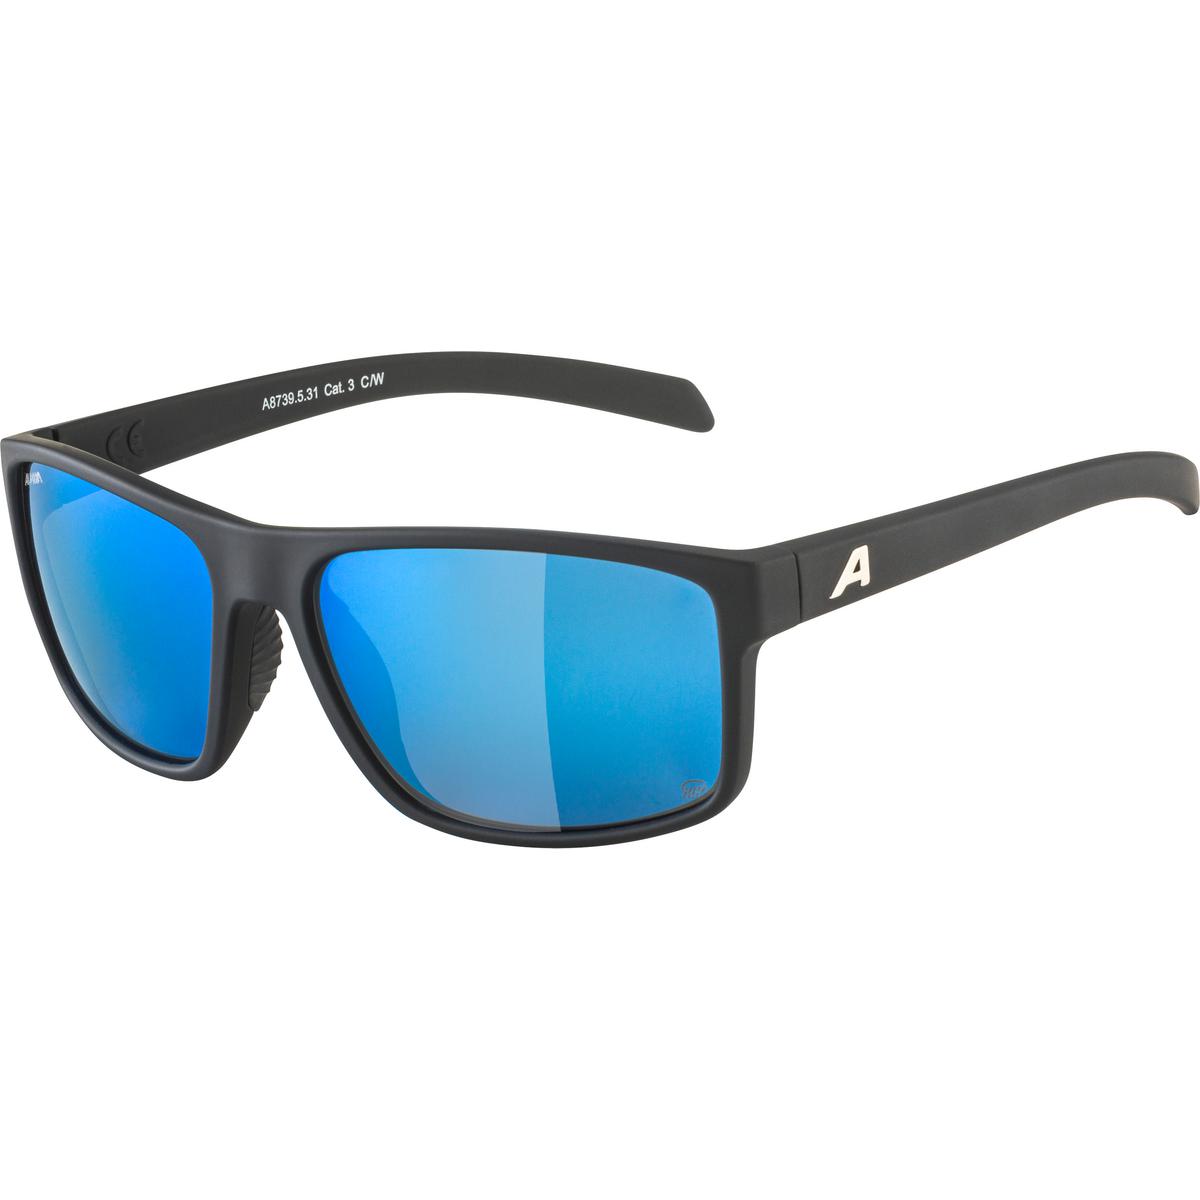 Productfoto van Alpina Nacan I POL Bril - black matt / mirror blue